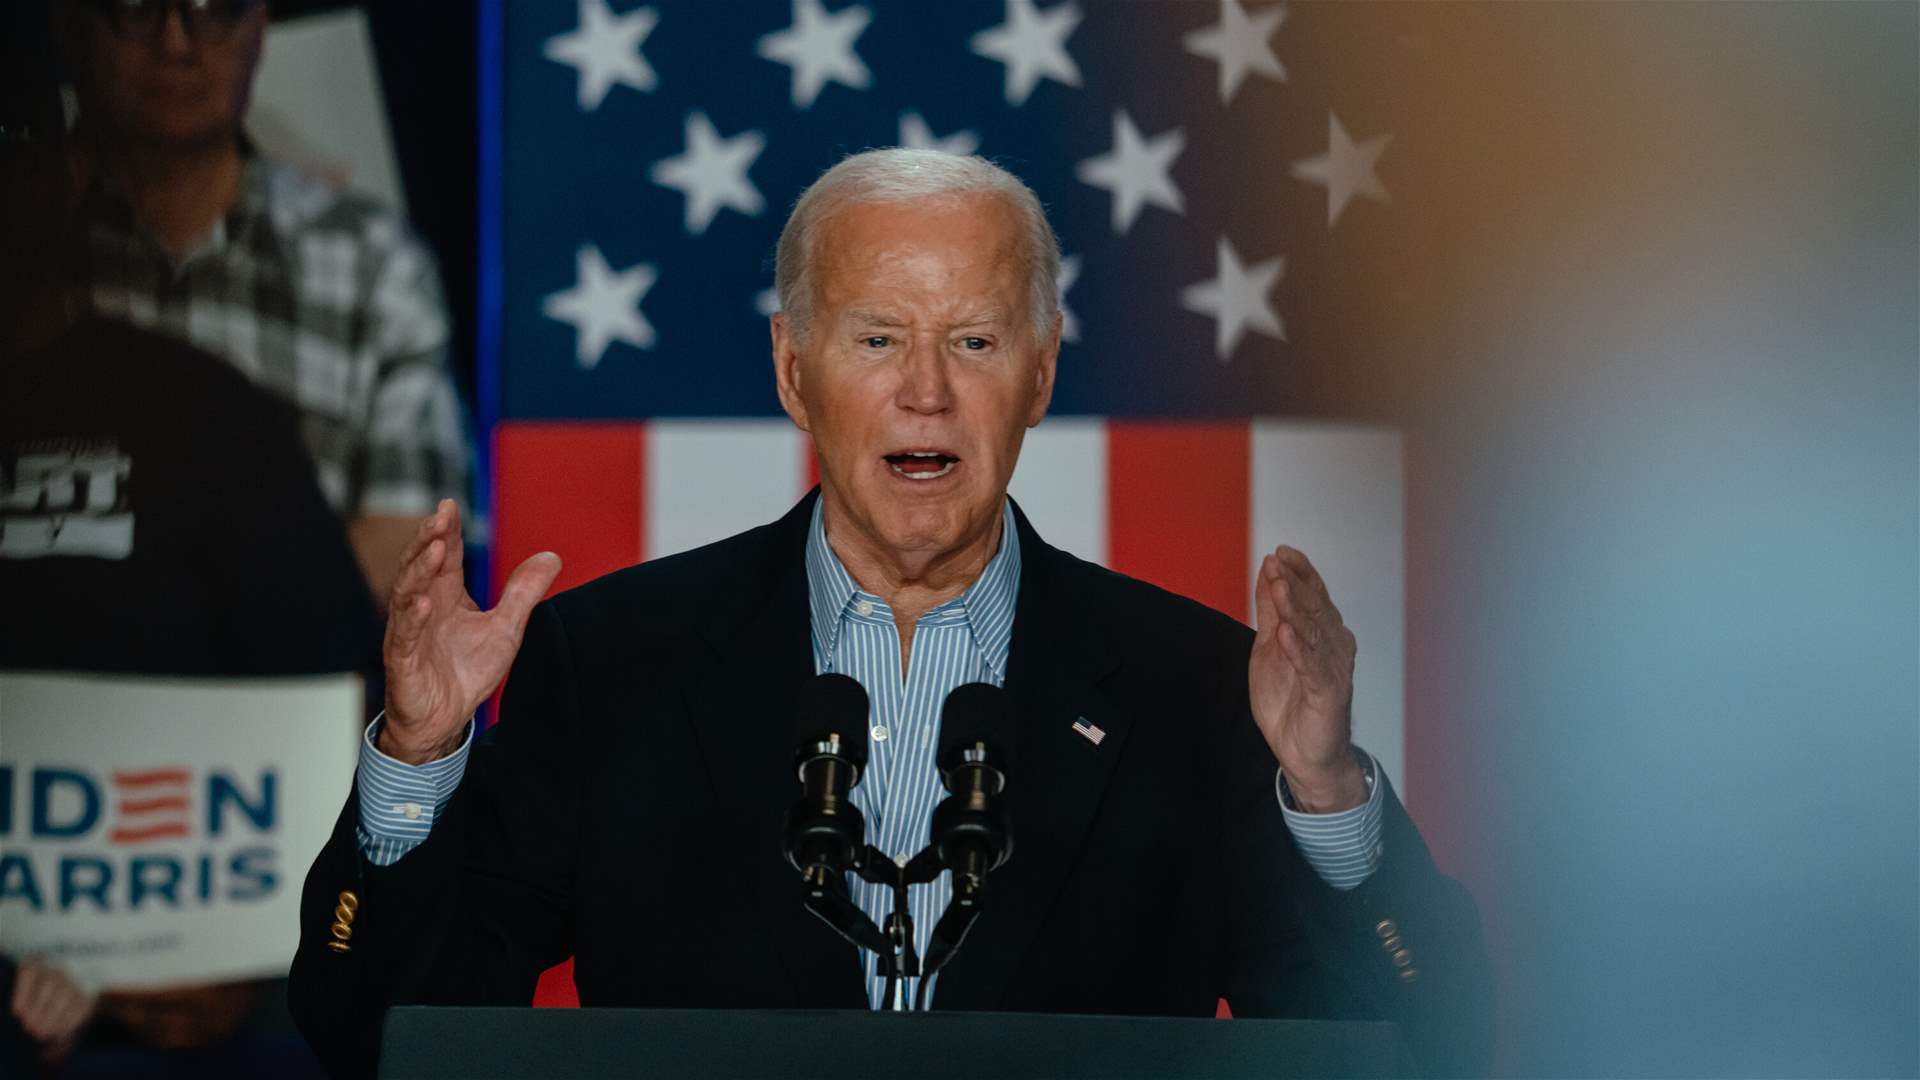  Biden tells NATO in forceful speech: Ukraine will stop Putin